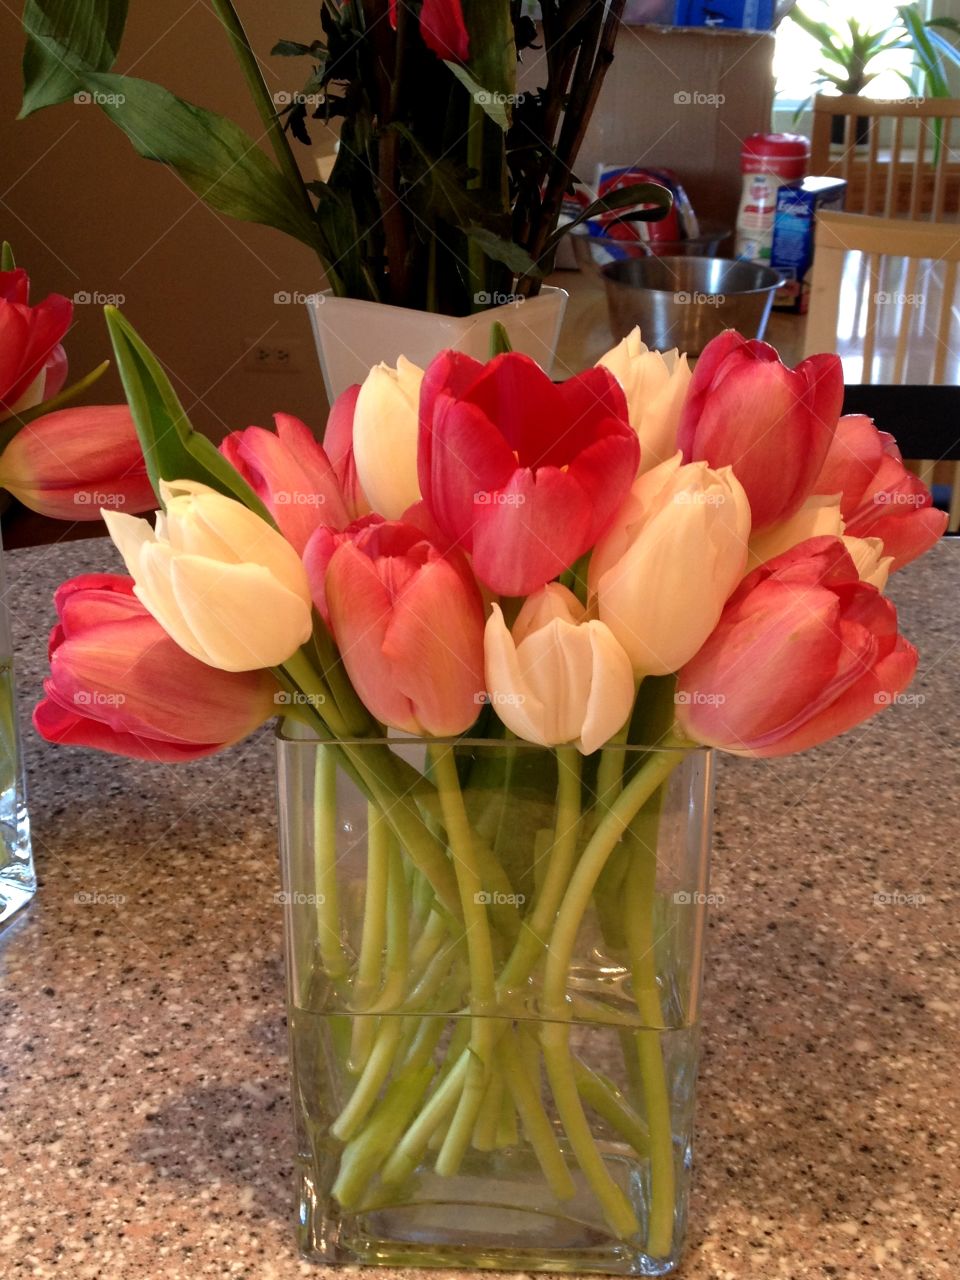 Tulips. Tulips in glass vase